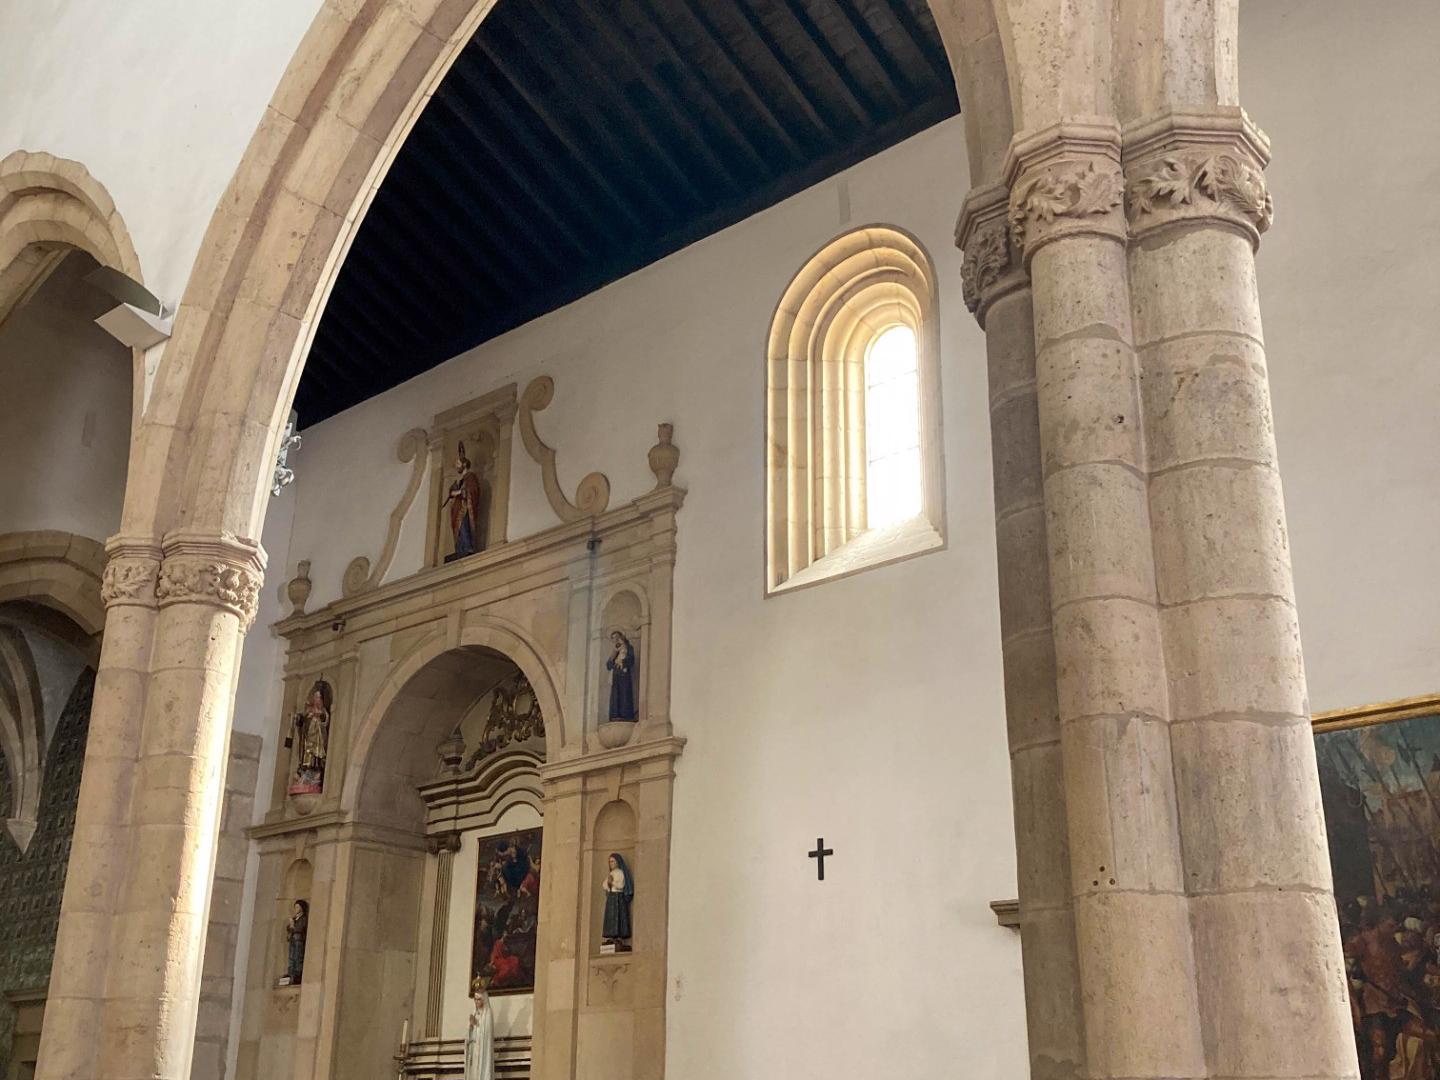 Arquitetura - A Igreja apresenta uma planta retangular, estruturada em três naves e com uma torre sineira com um relógio do século XVI. Os seus portais são luxuosamente decorados ao estilo manuelino.